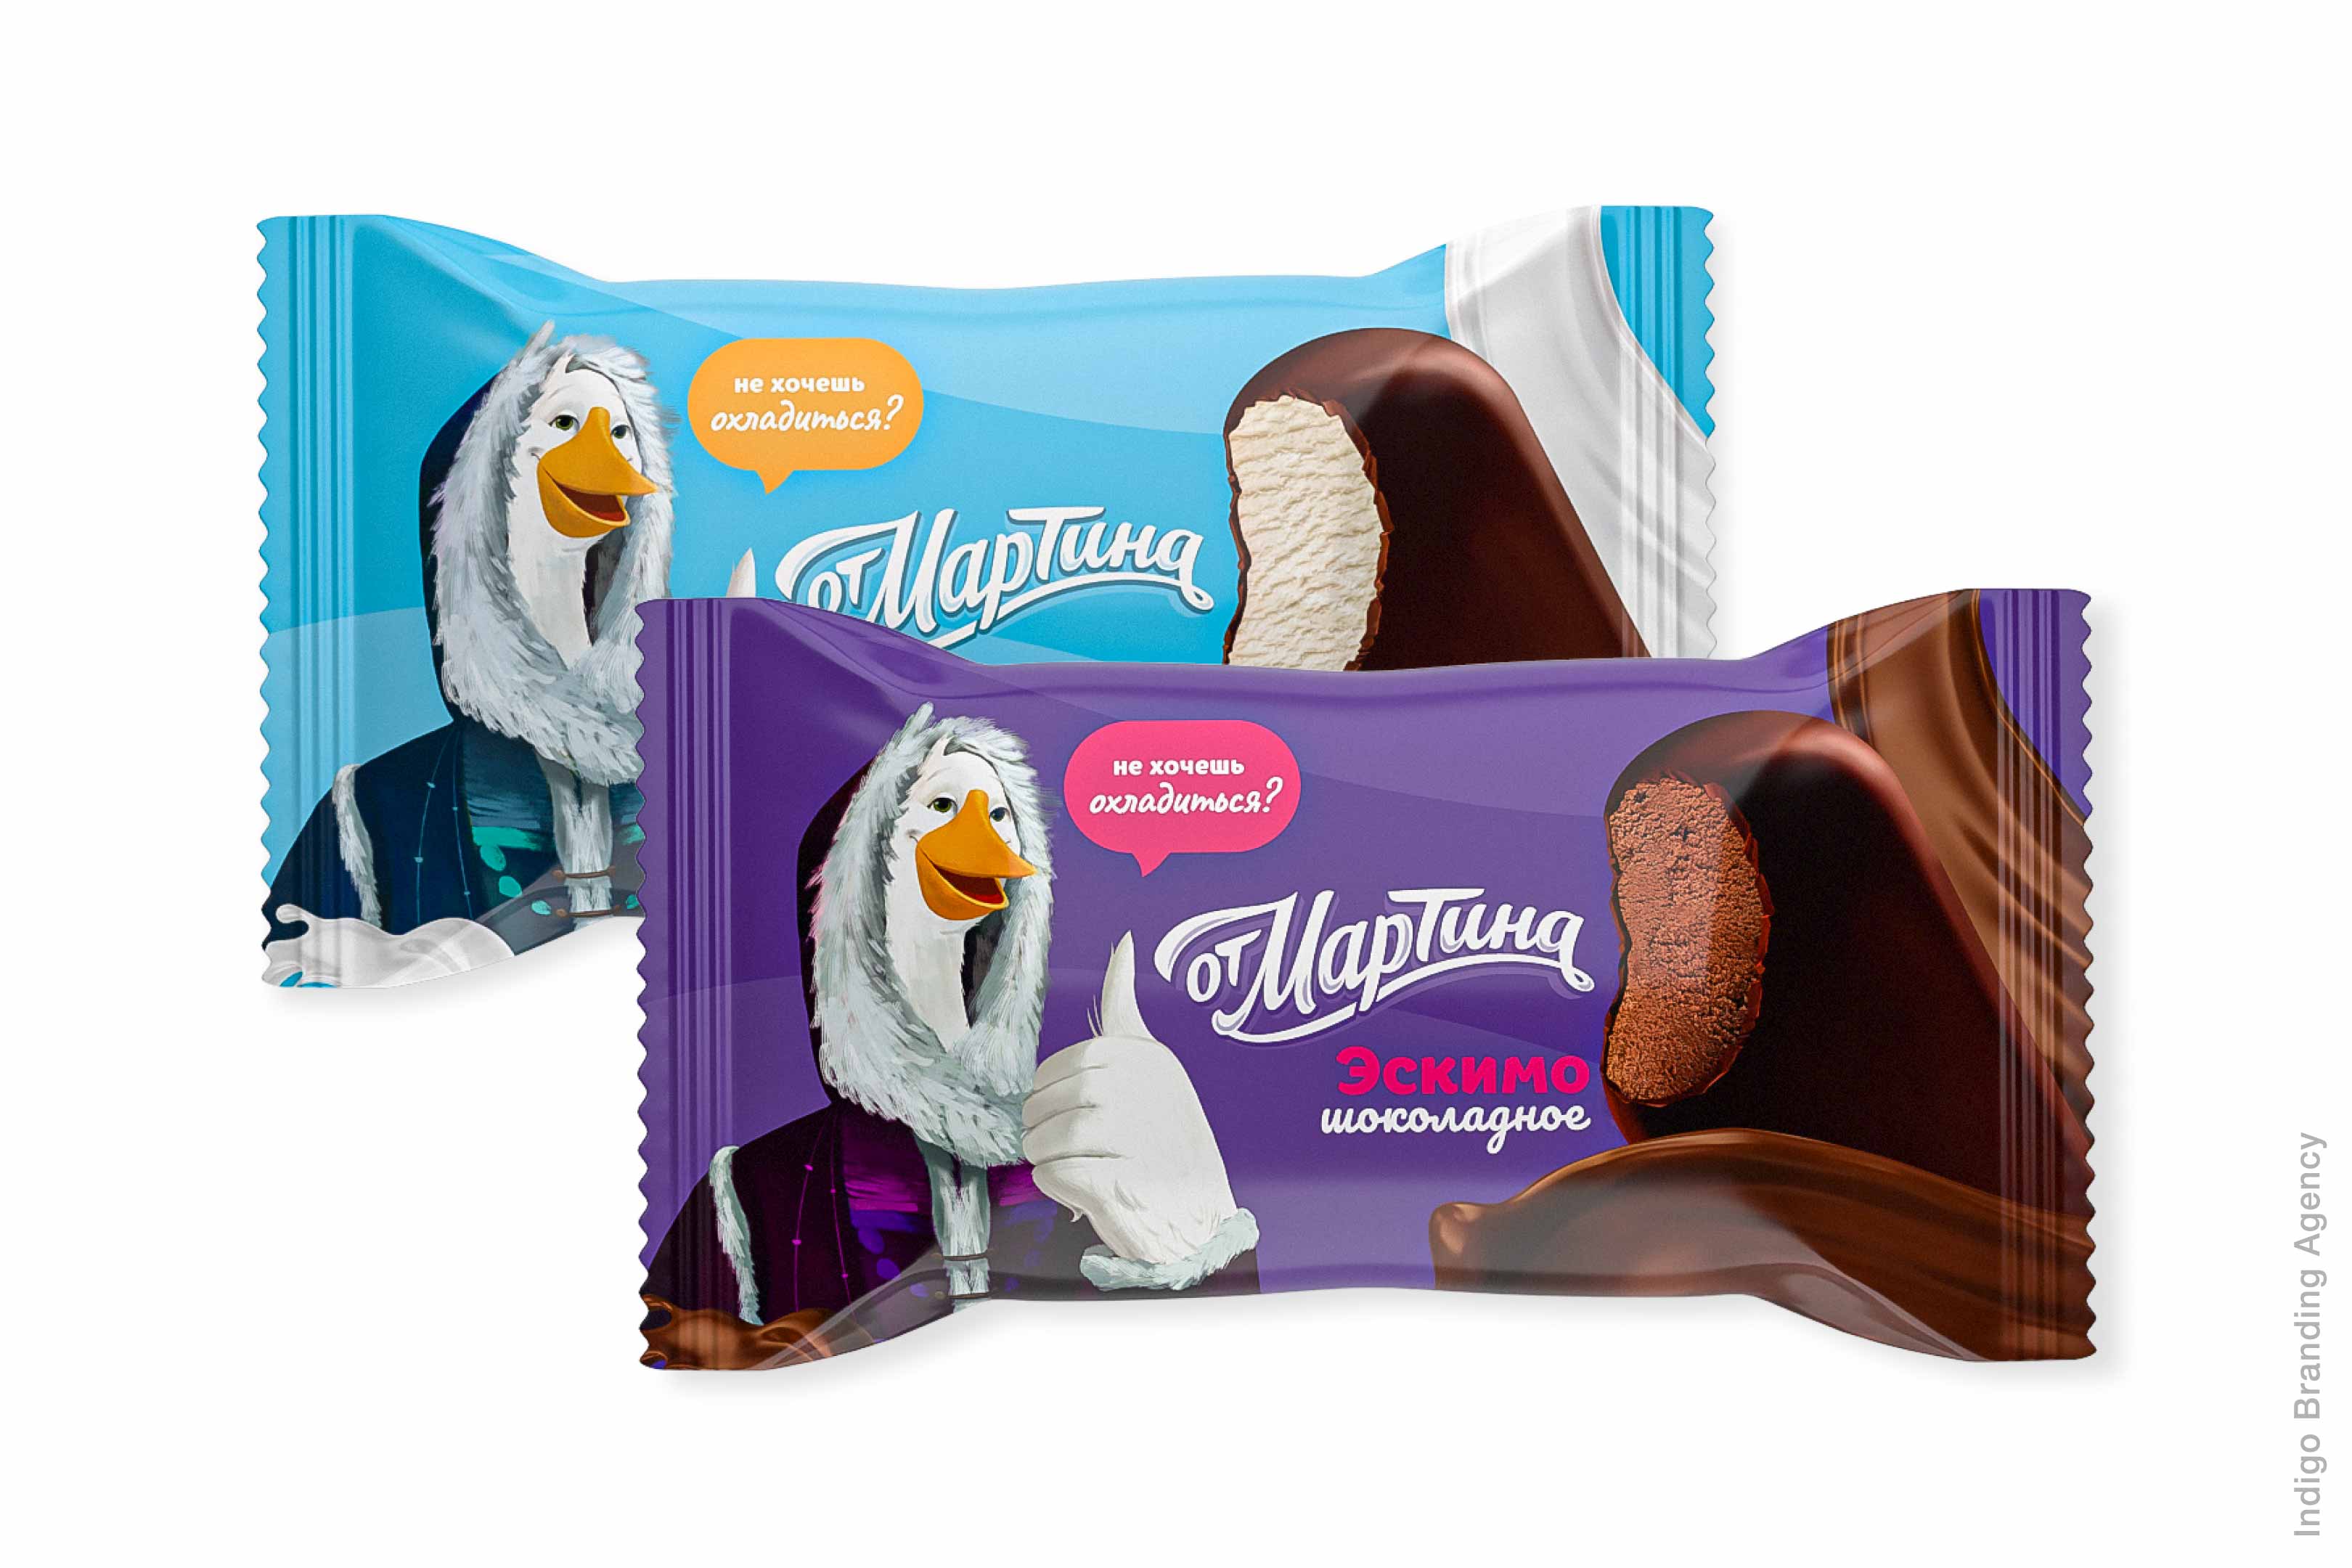 Ot Martina ice cream packaging done by indigo branding in Yerevan